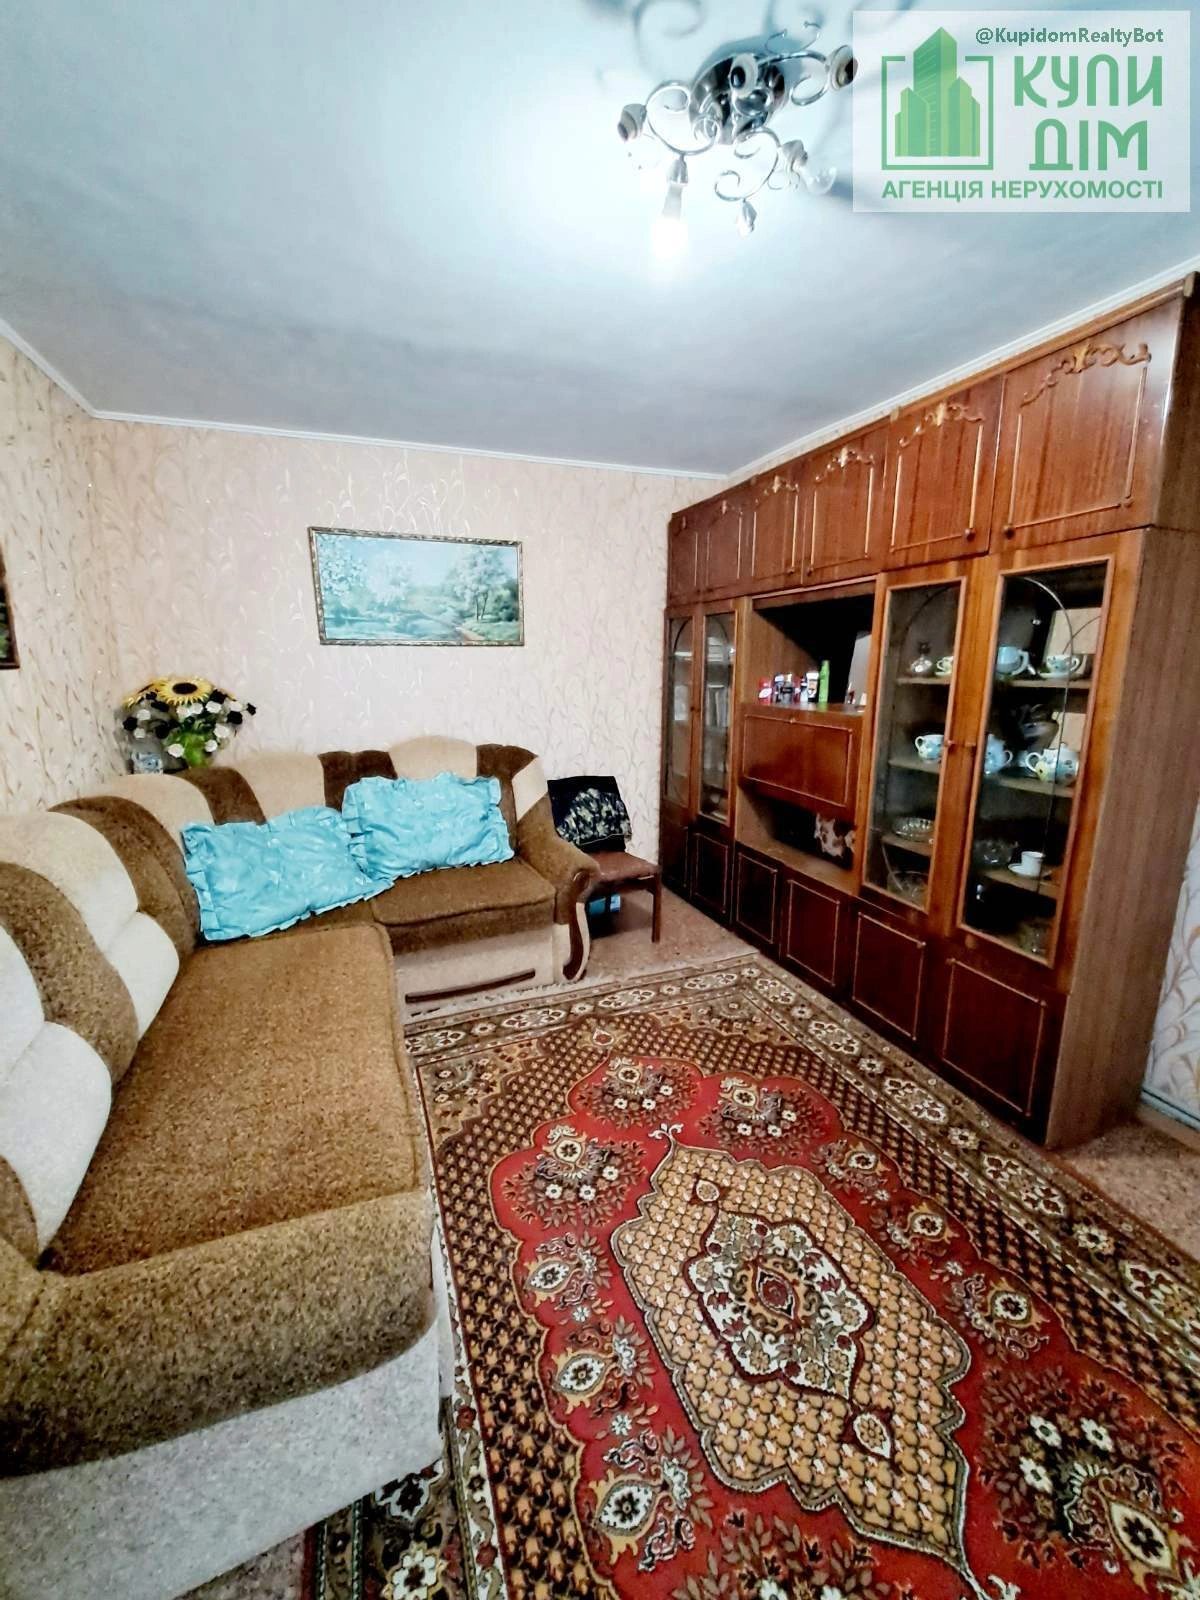 Продаж будинку. 47 m², 1 floor. Фортечний (кіровський), Кропивницький. 